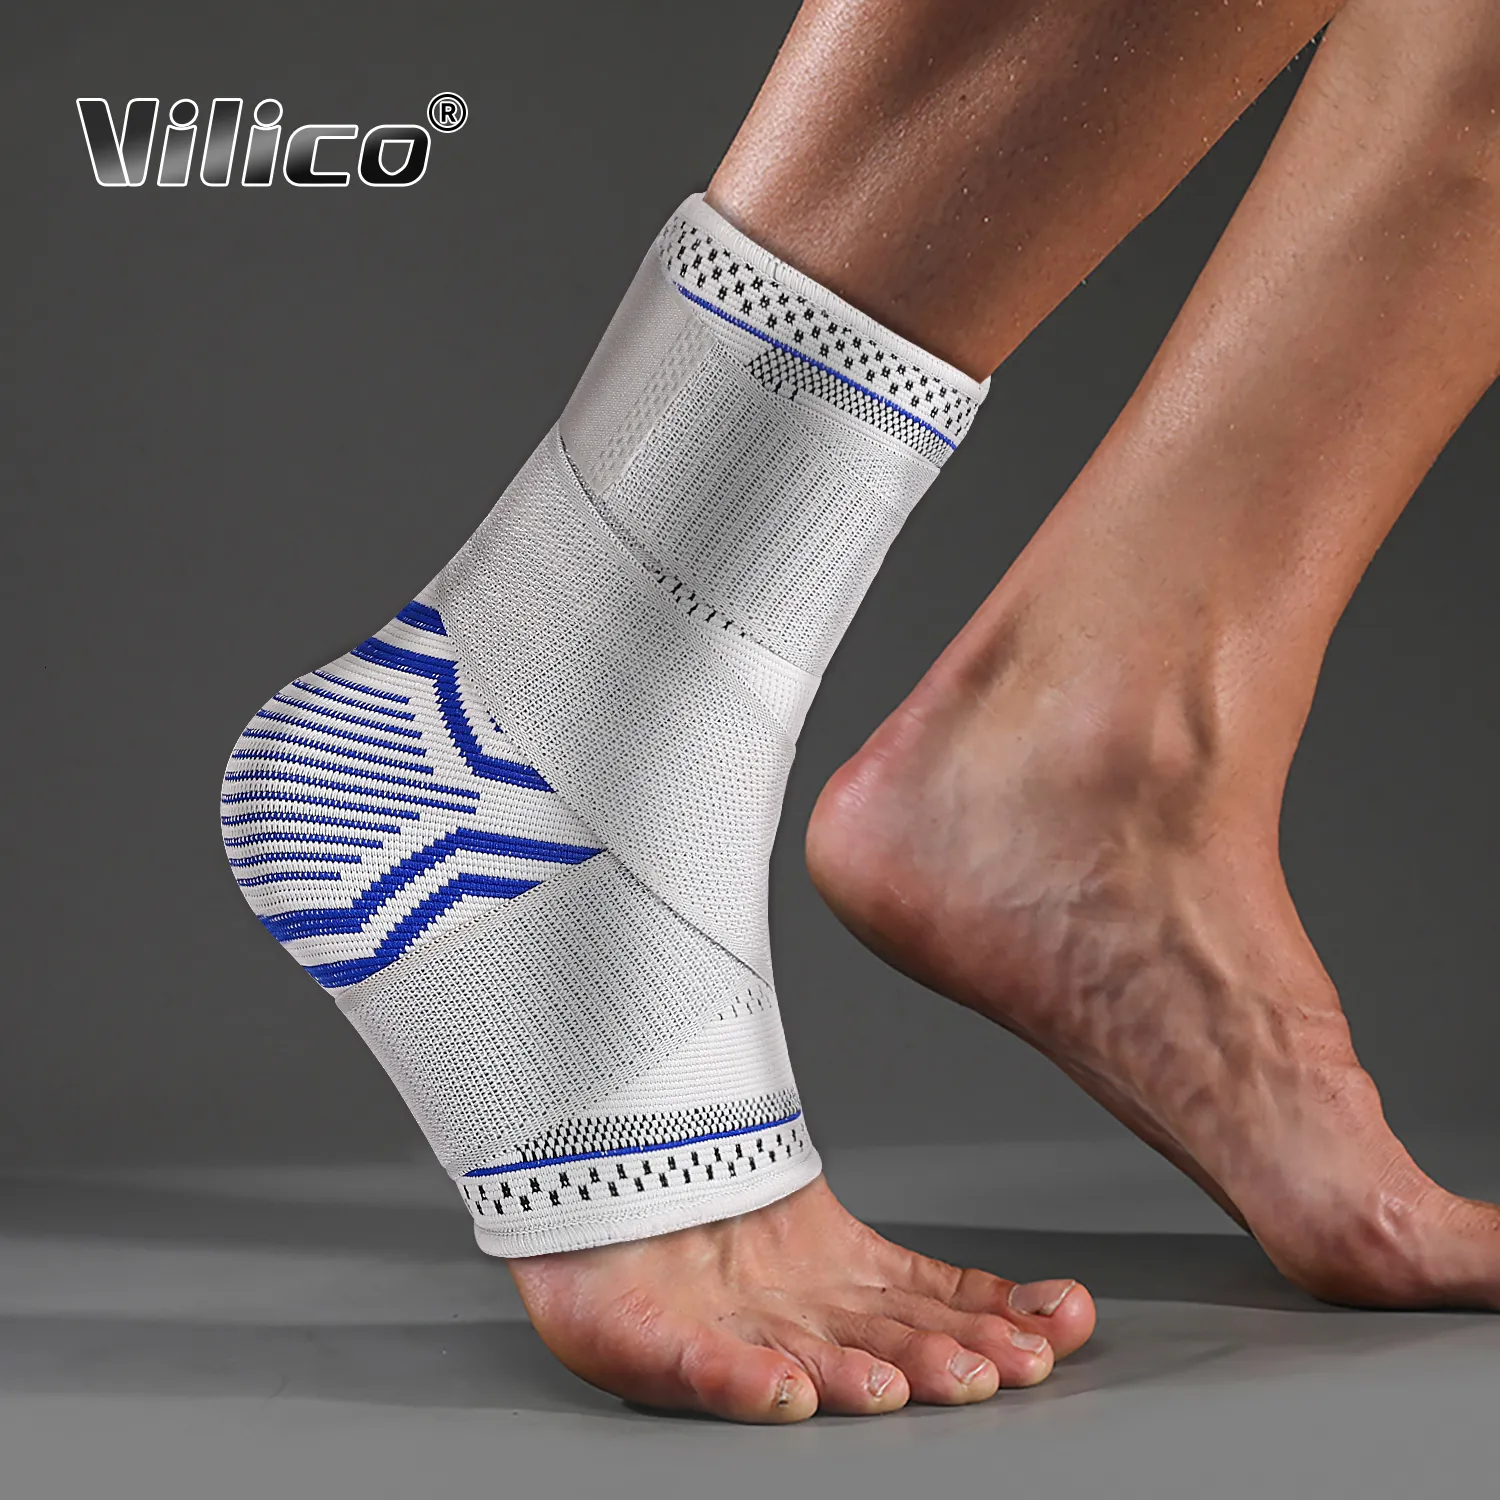 Tornozelo suporta vilico tornozelo com suporte ajustável no tornozelo protetora elástica de compressão suporte de guarda